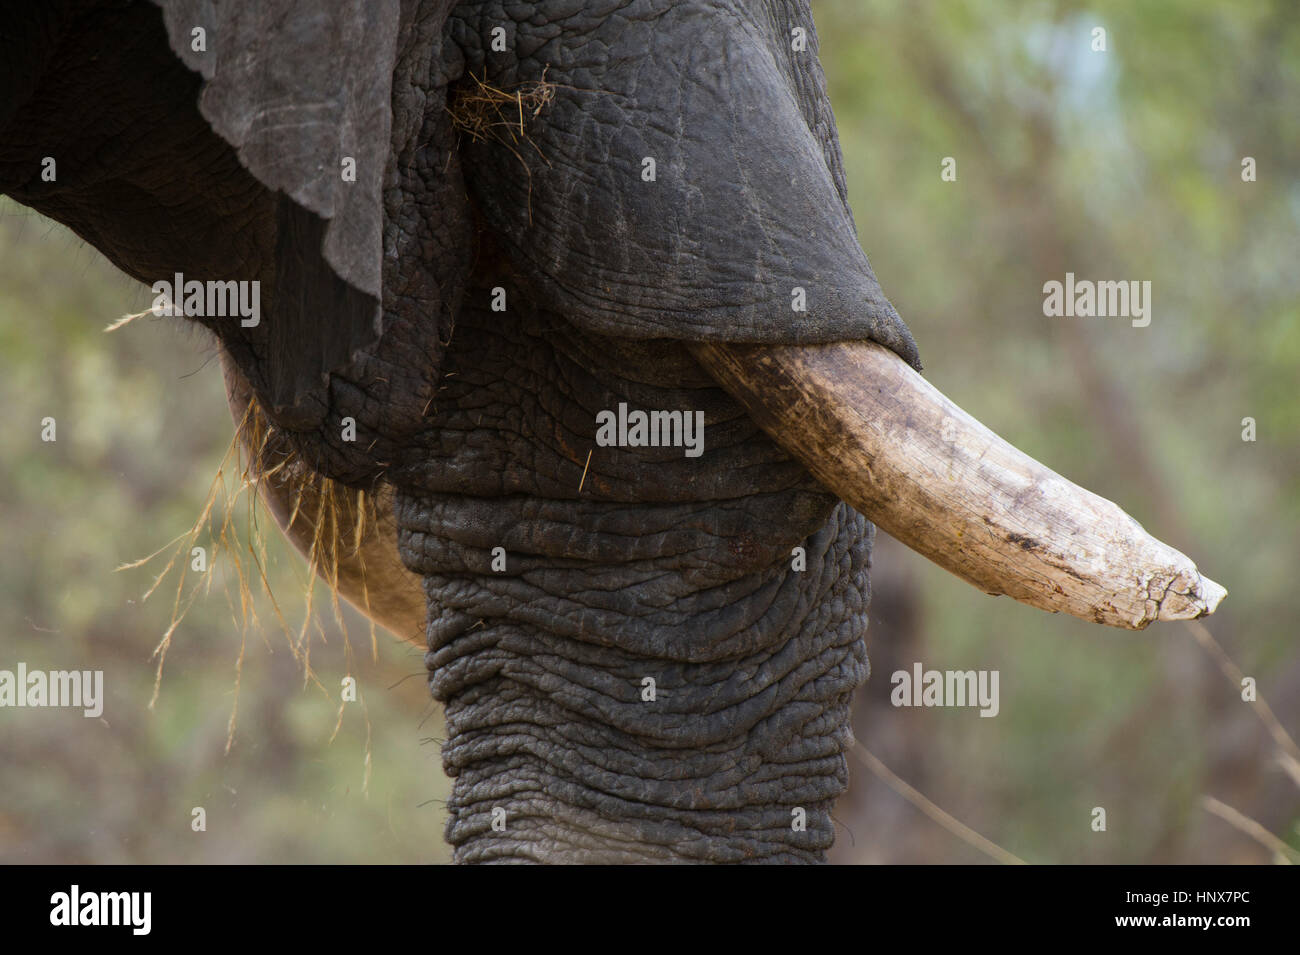 Dettaglio della zanna di un elefante africano (Loxodonta africana), Savuti marsh, Chobe National Park, Botswana Foto Stock